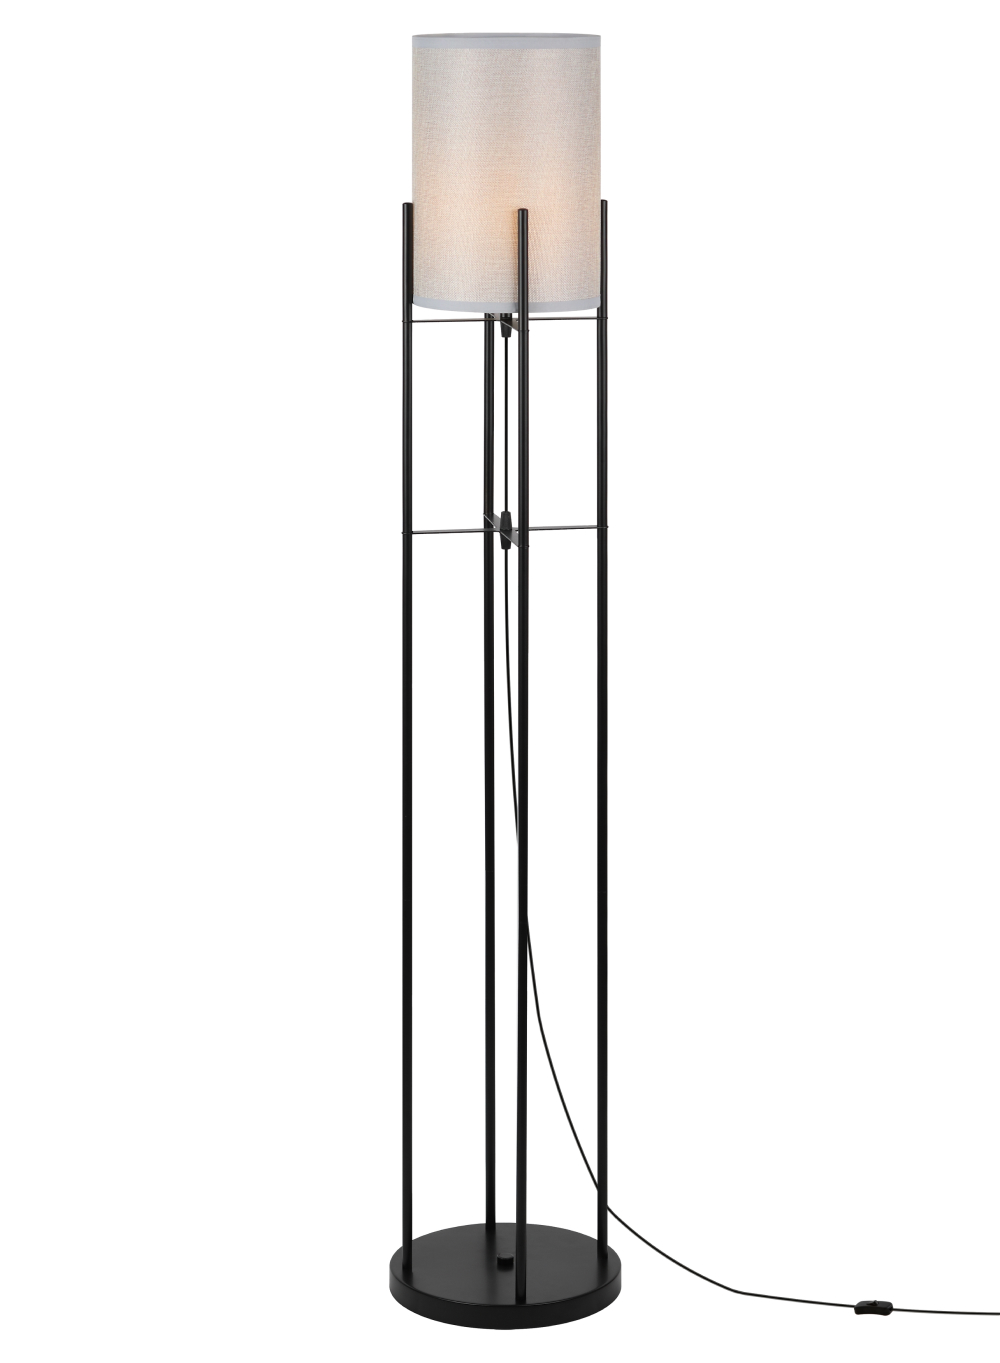 Светильник напольный Rivoli Bianca мощность - 60 Вт, цоколь - E27, тип лампы - накаливания, материал корпуса - металл /ткань, цвет - черный/серый